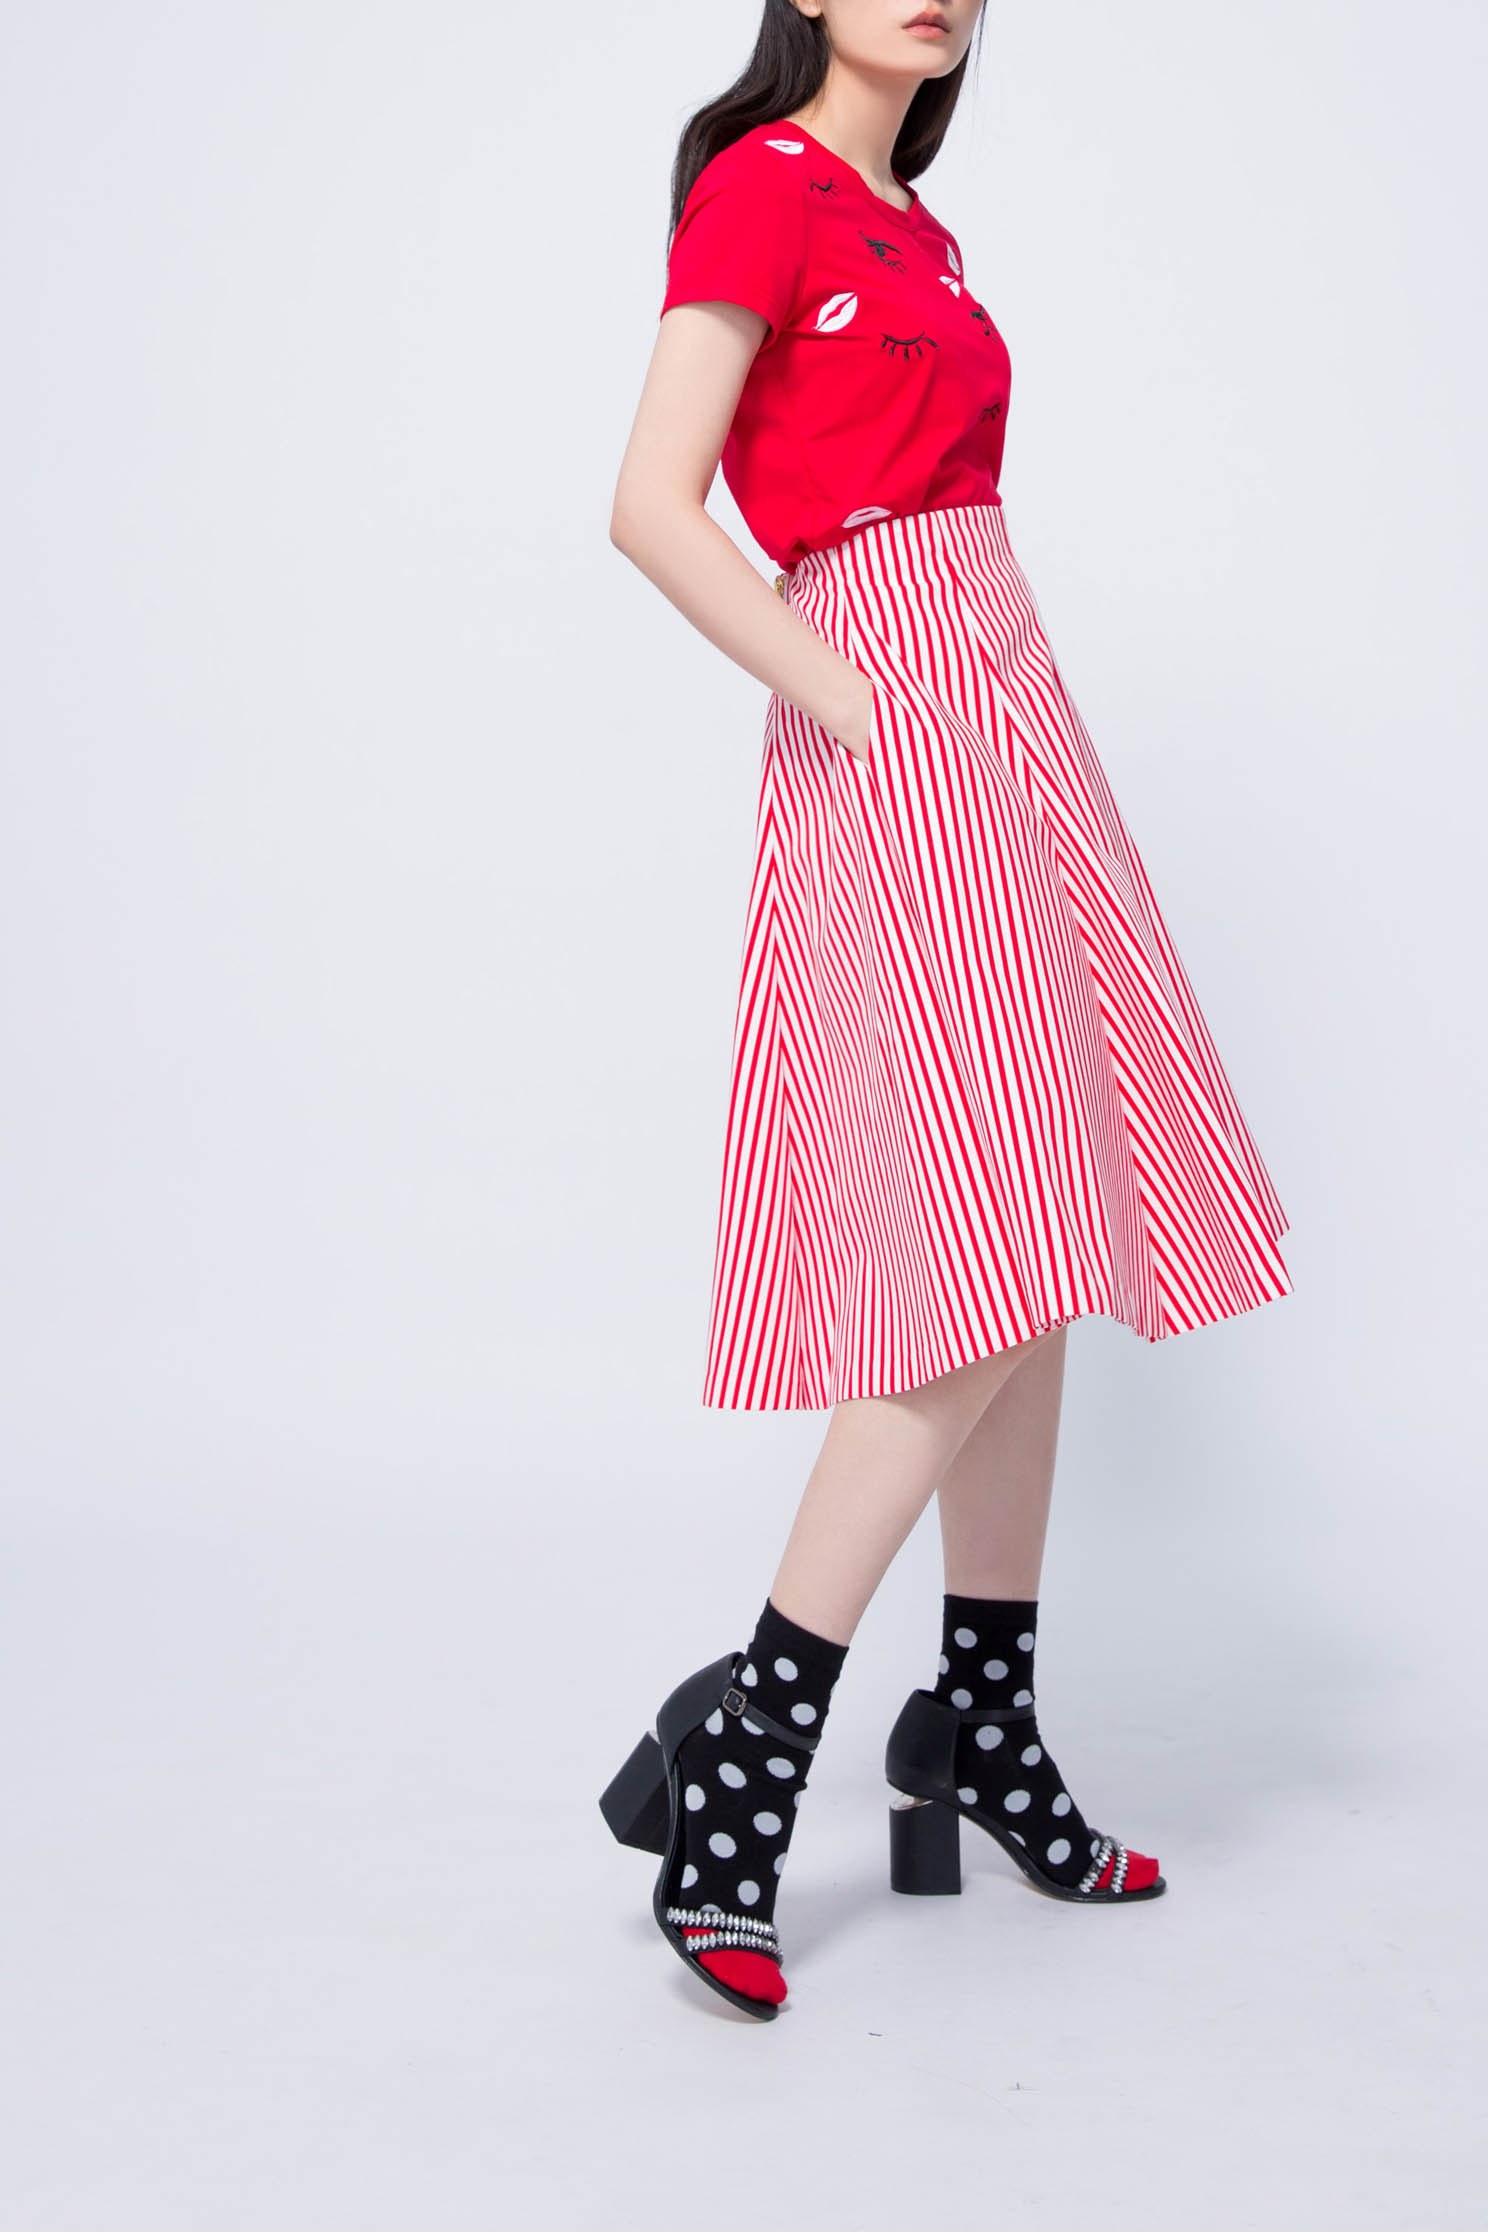 紅白條紋裙紅白條紋裙,春夏穿搭,條紋,網裙,長裙